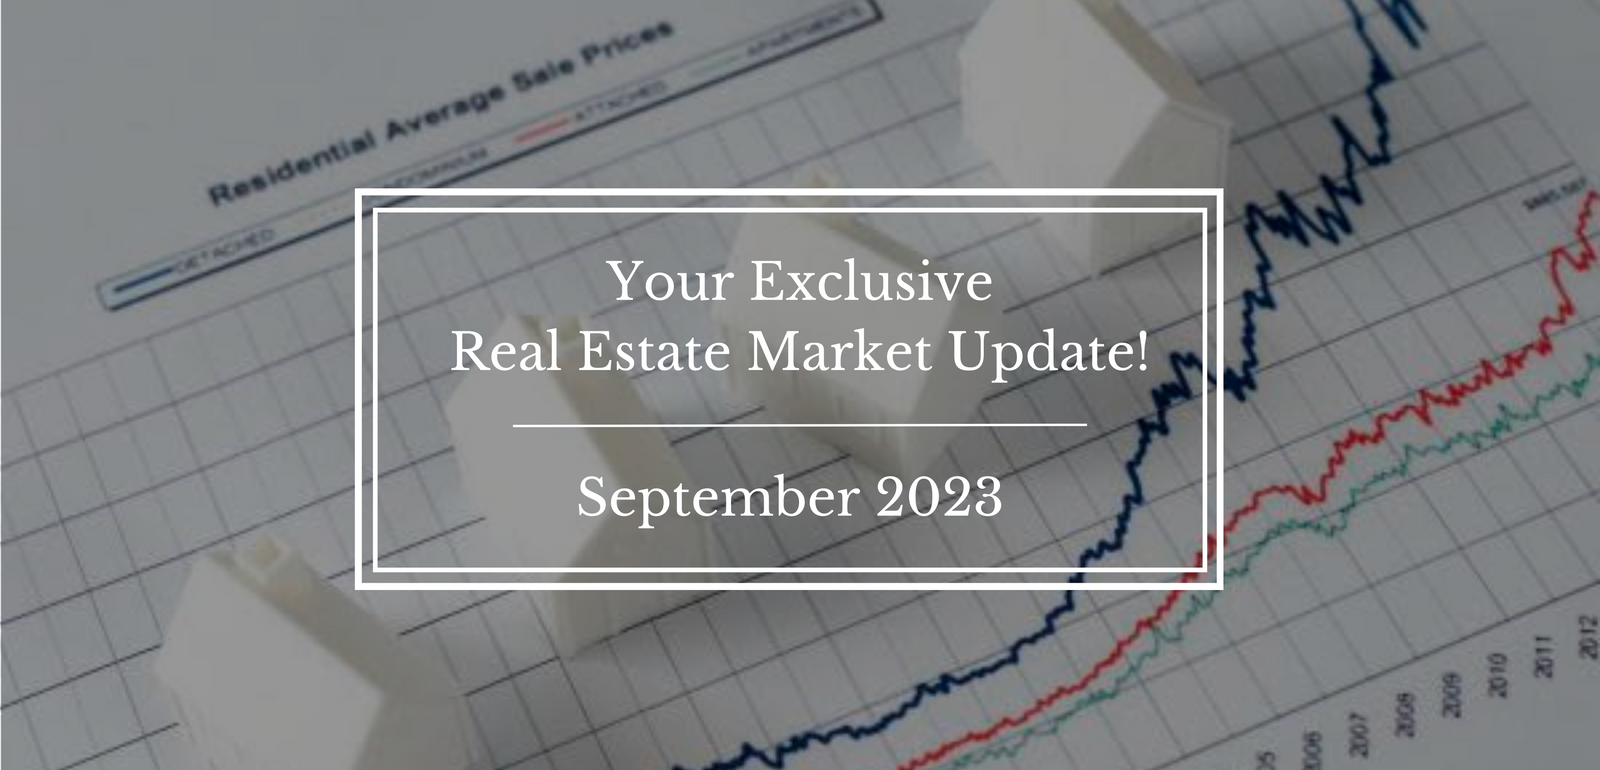 Market Update for September 2023